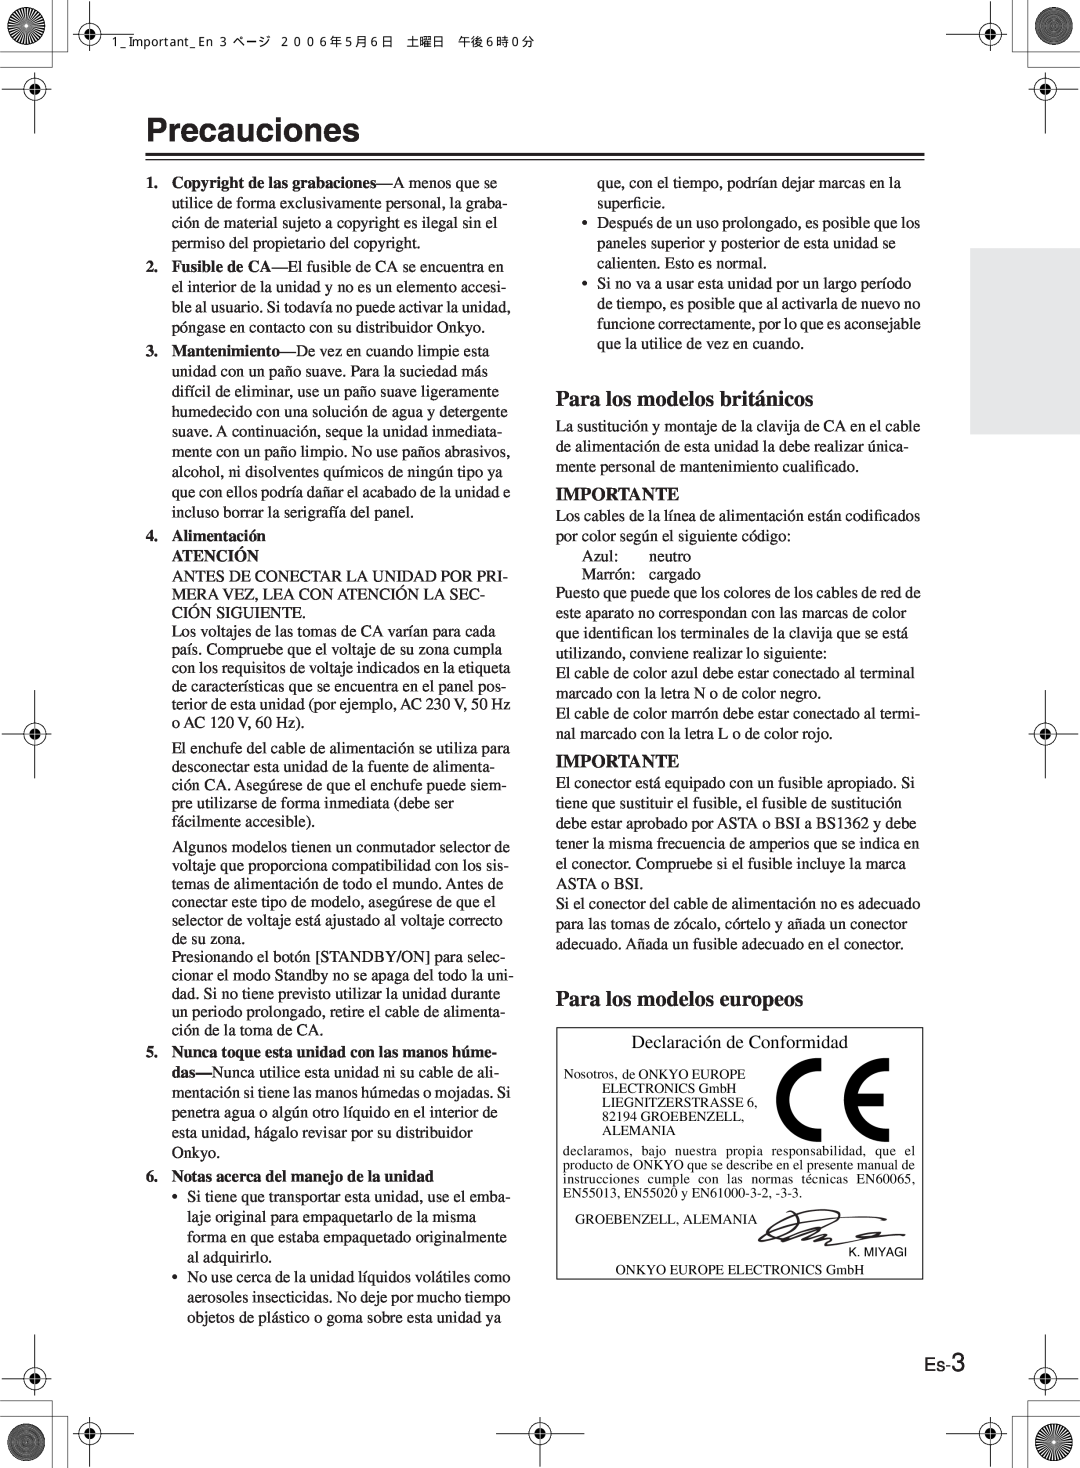 Onkyo TX-8522 manual Precauciones, Para los modelos británicos, Para los modelos europeos, Declaración de Conformidad, Es-3 